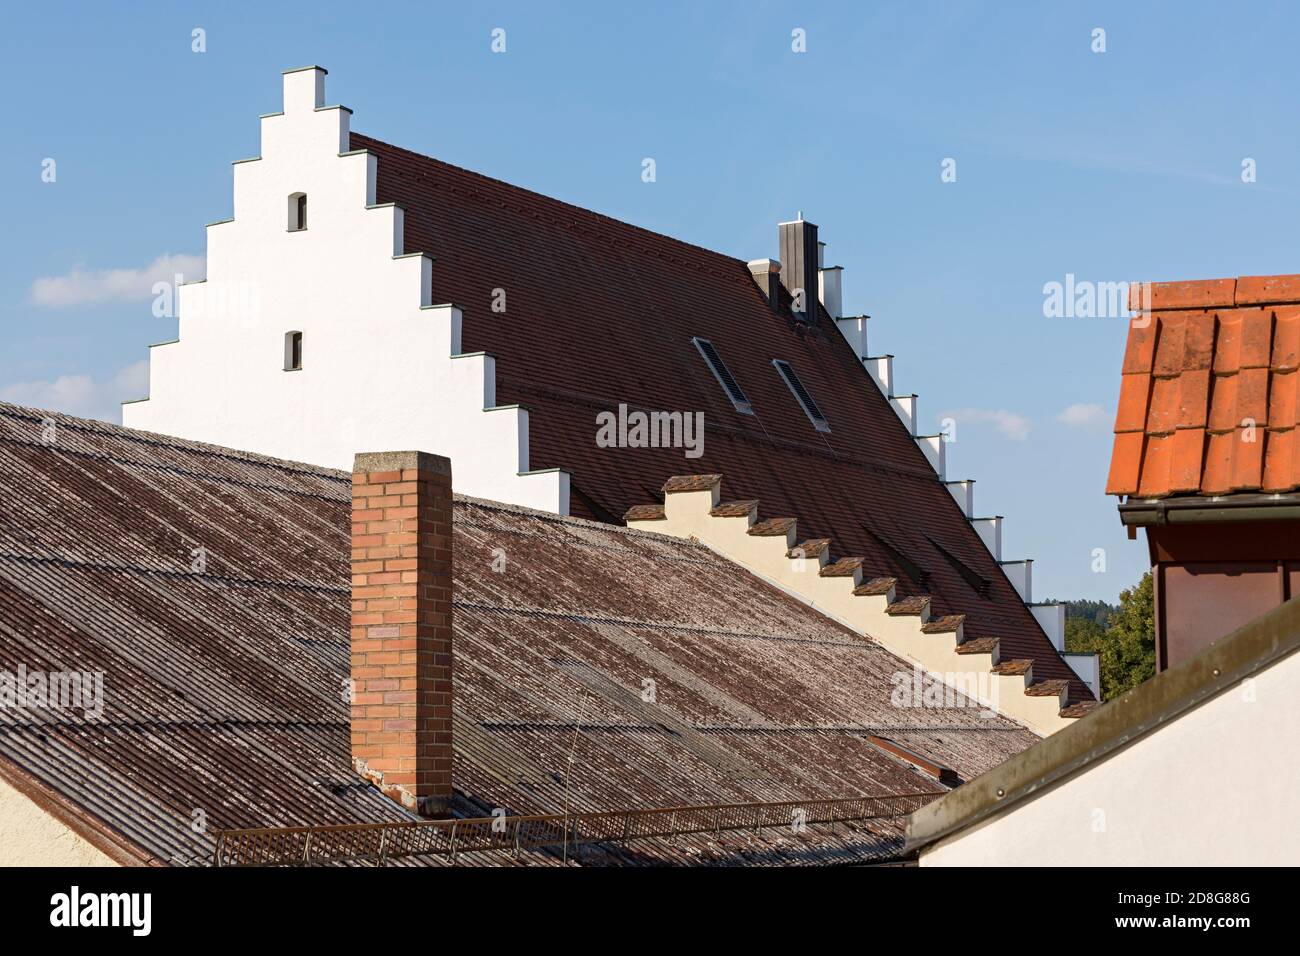 Beilngries, Altstadt, Dächer, Treppengiebel Foto de stock